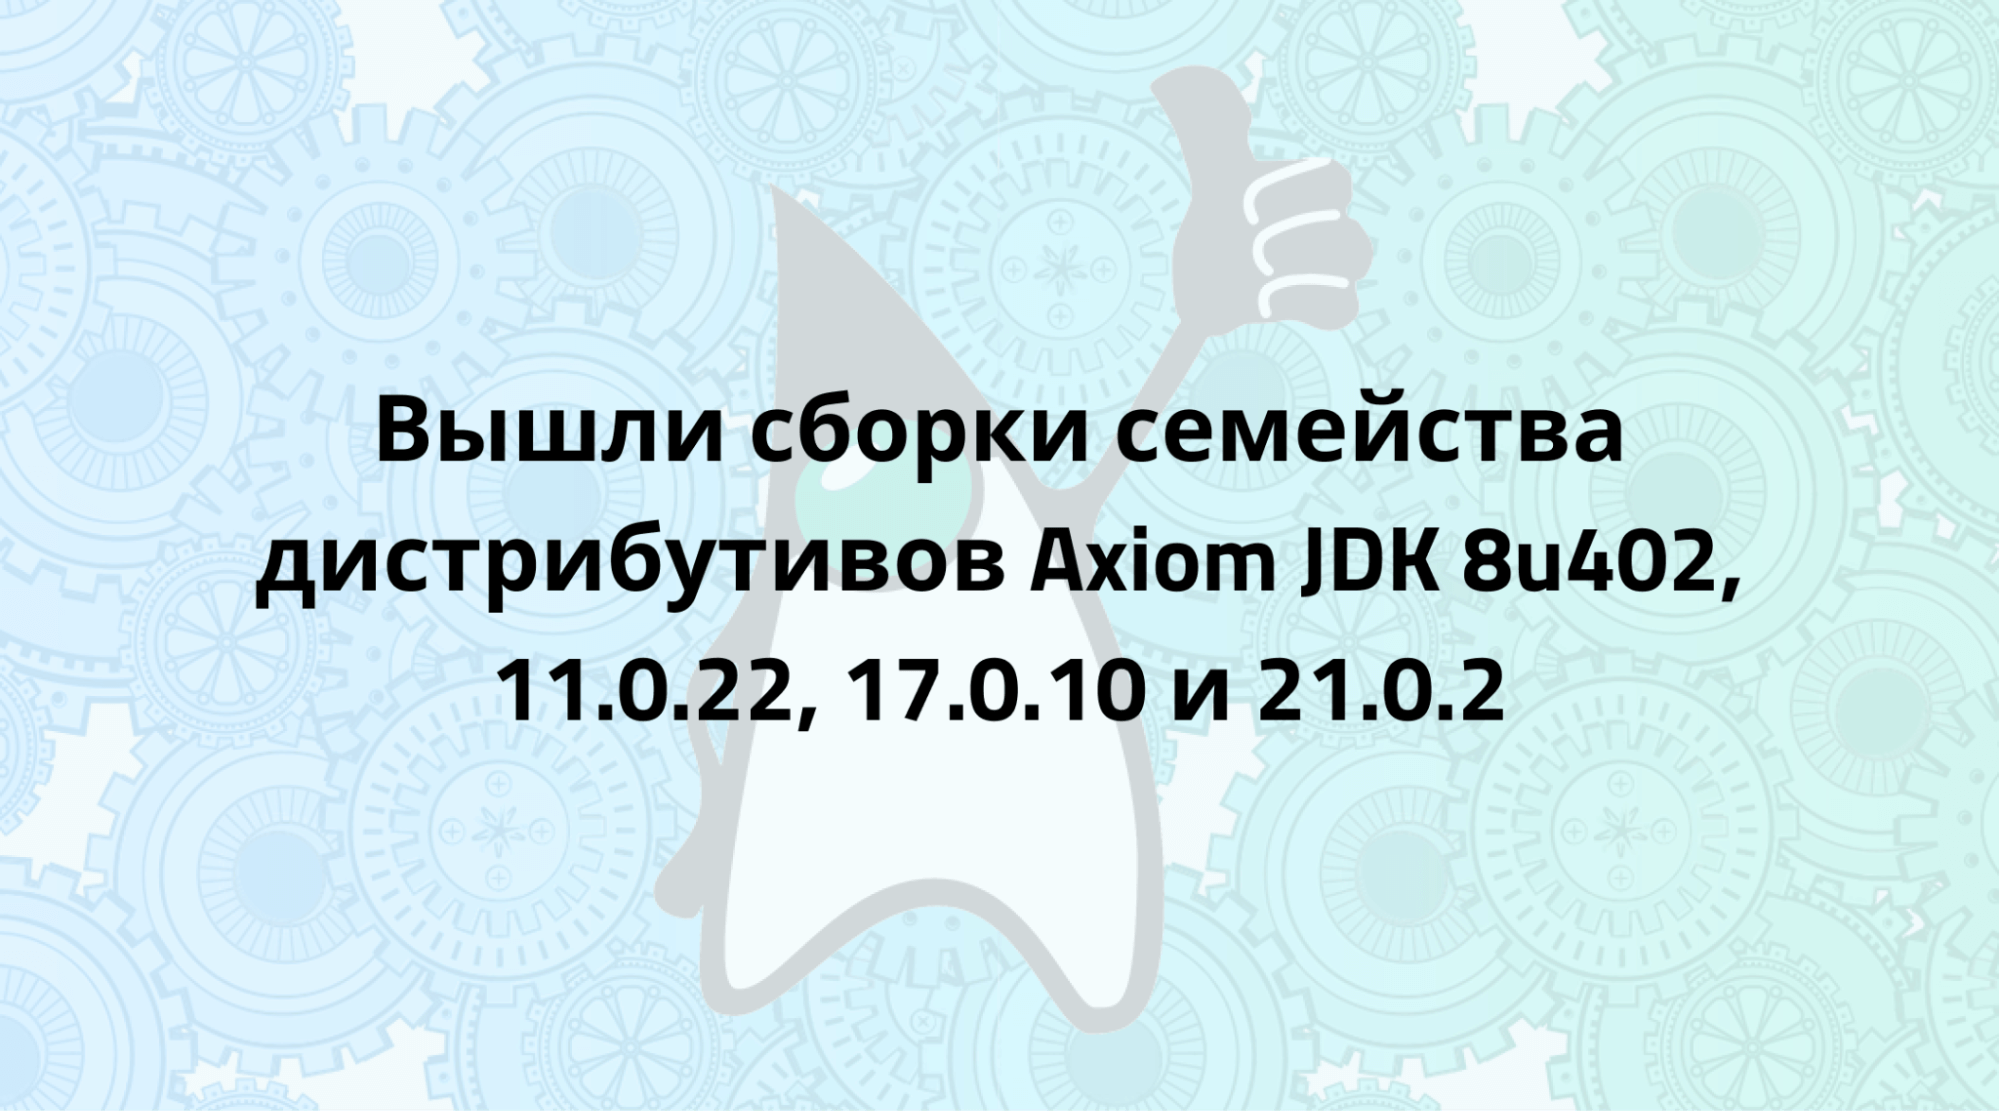 Axiom JDK 8u402, 11.0.22, 17.0.10 и 21.0.2 доступны для загрузки